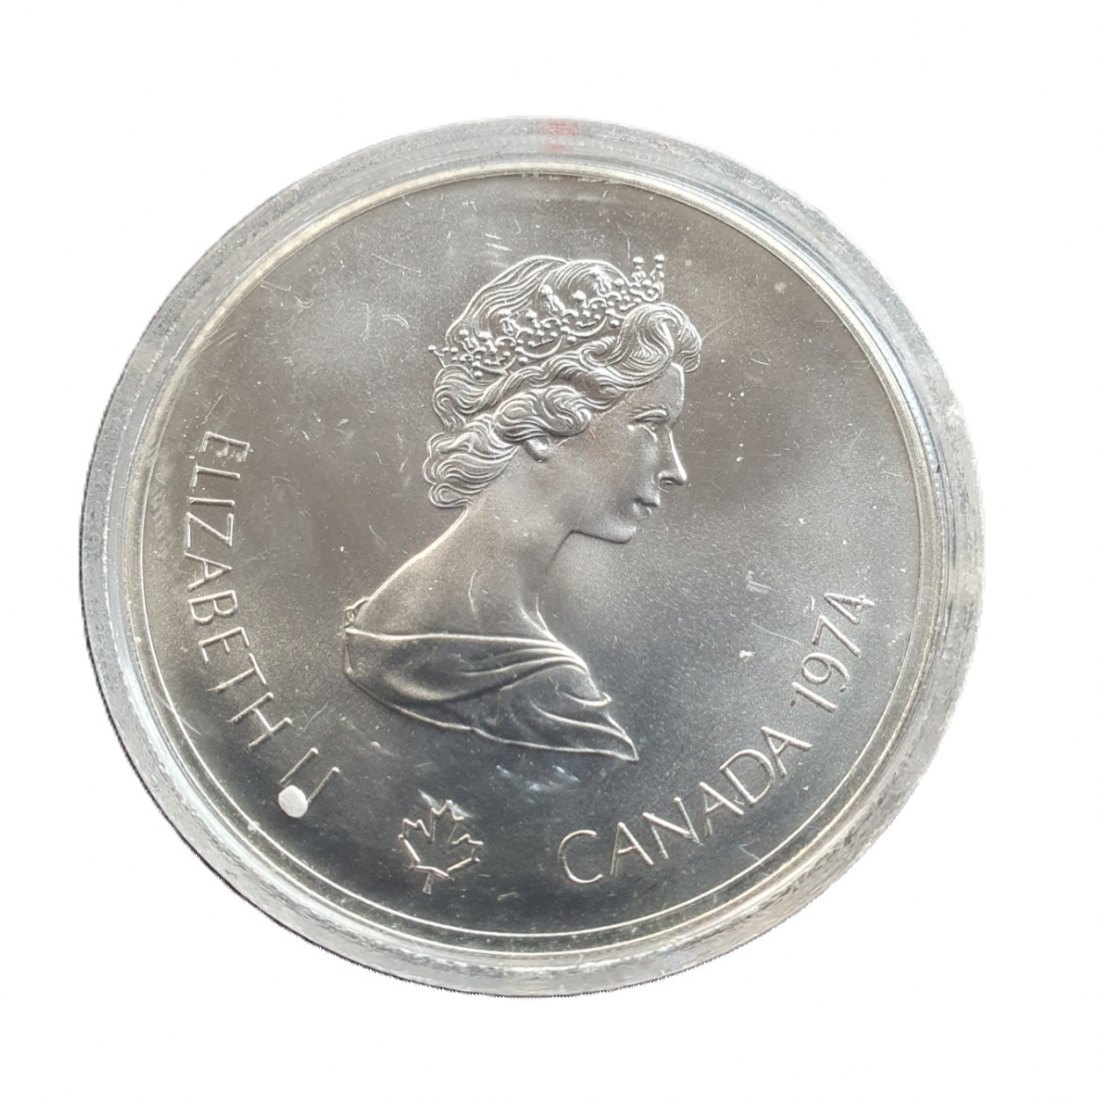  Canada 5 Dollars 1974 Elizabeth II Olympiade XXI Montreal 1976 Silber Münze 22,5 g fein   